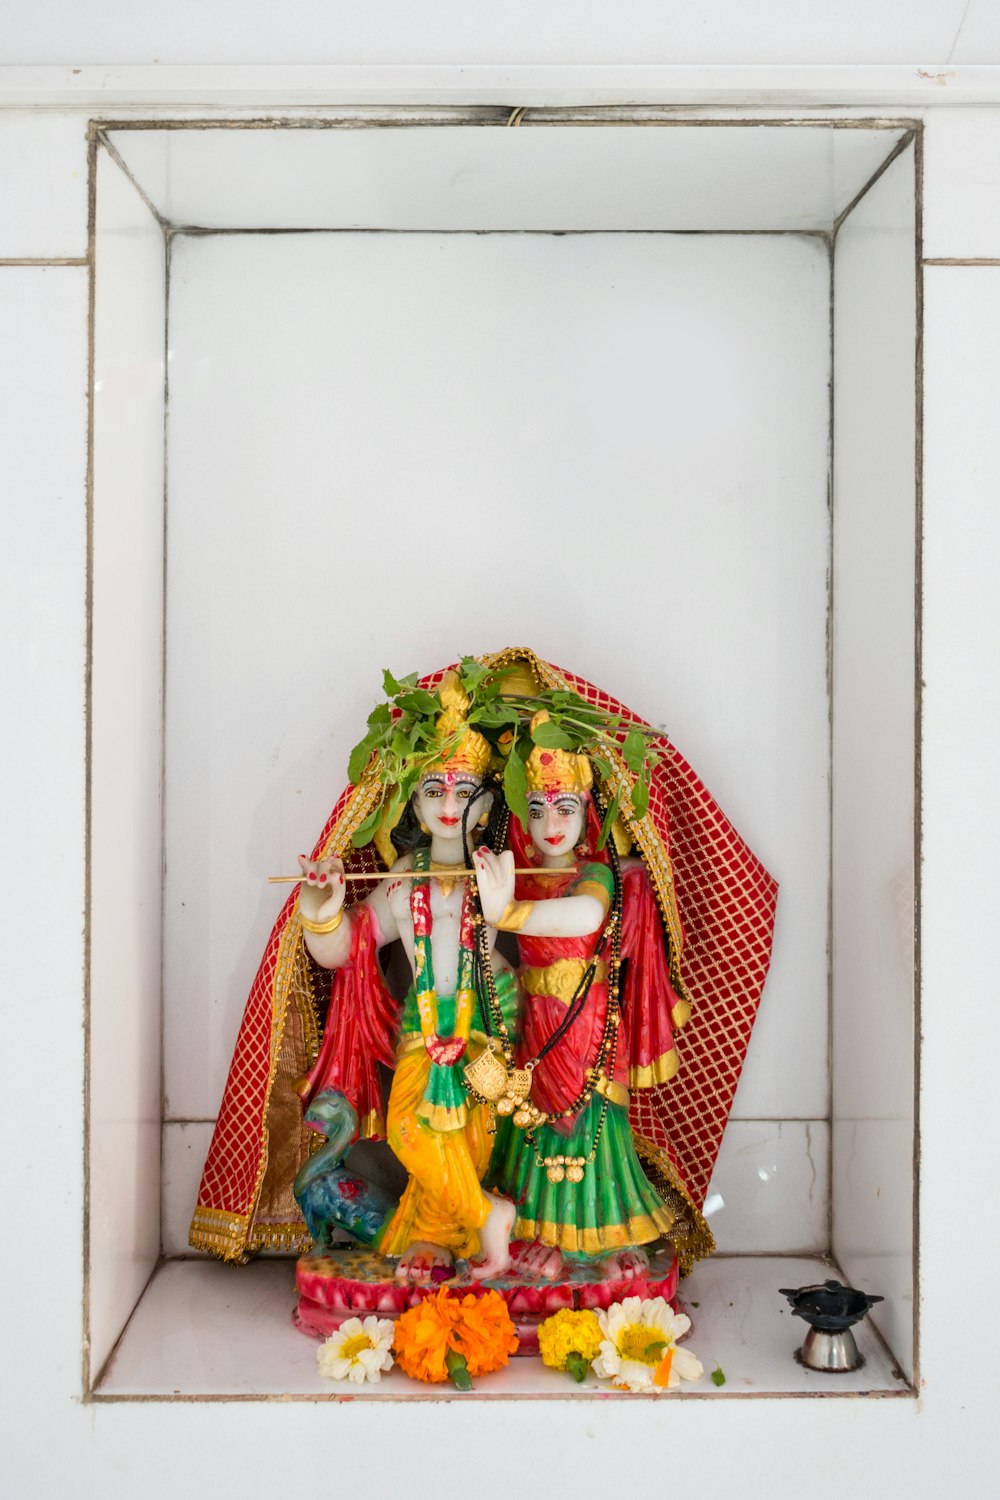 Eine Statue eines hinduistischen Gottes in einer Nische